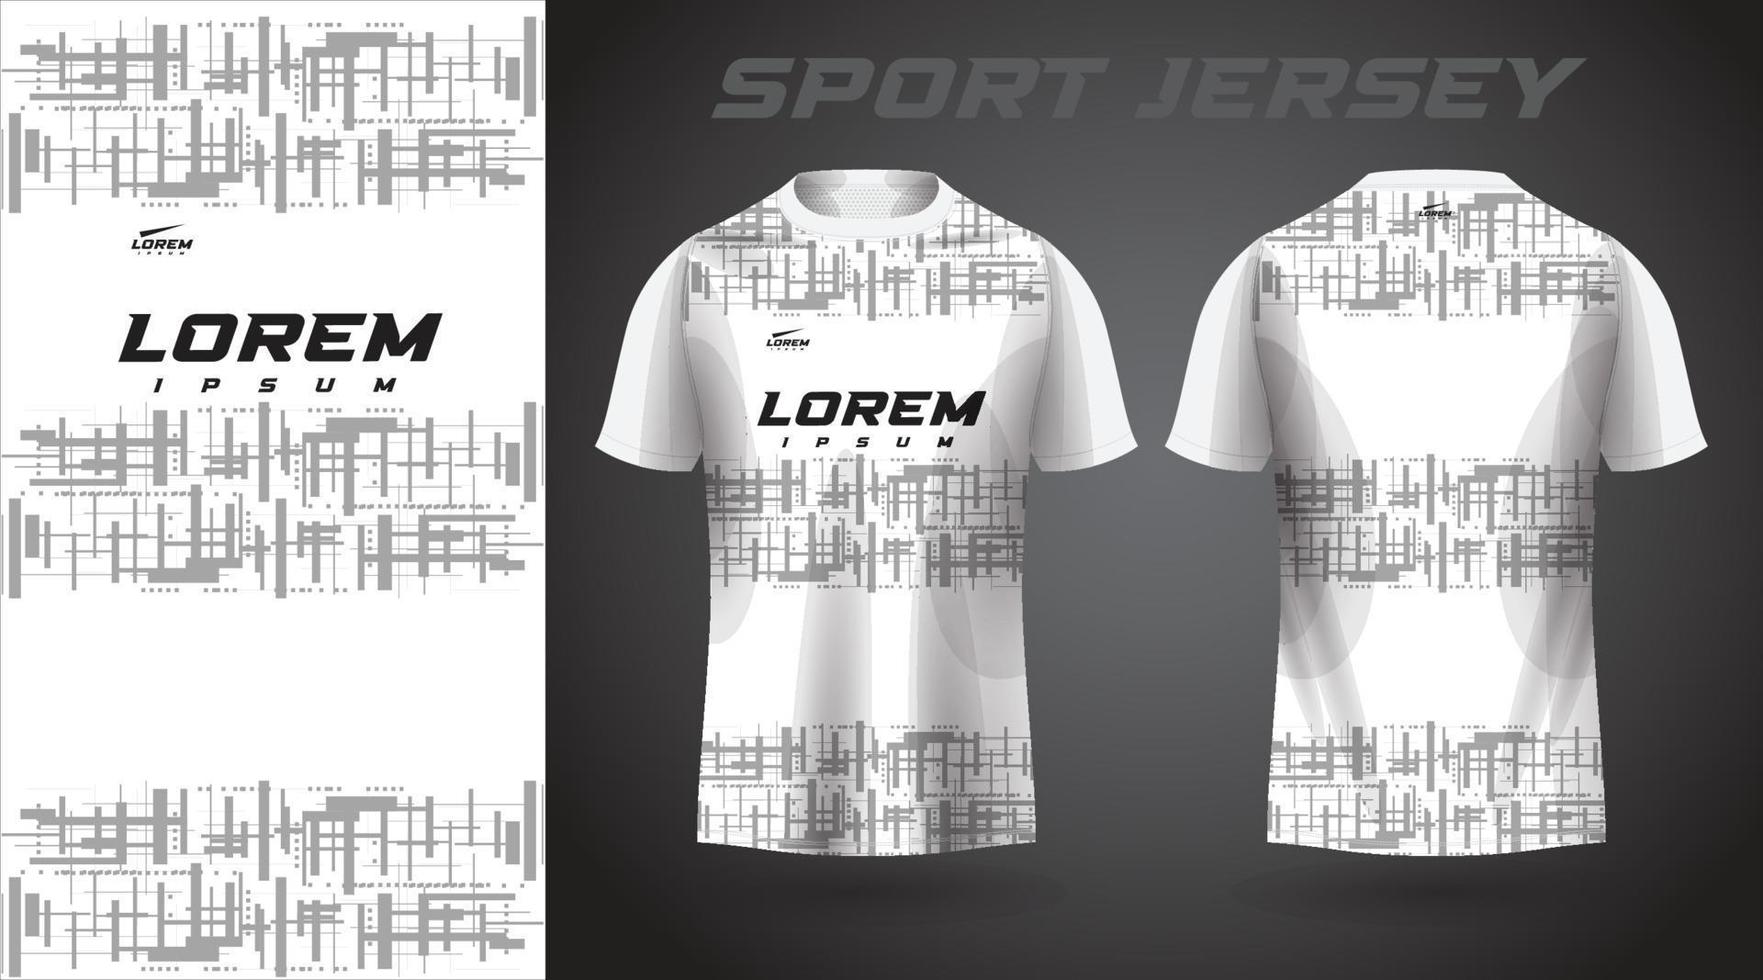 white shirt sport jersey design vector